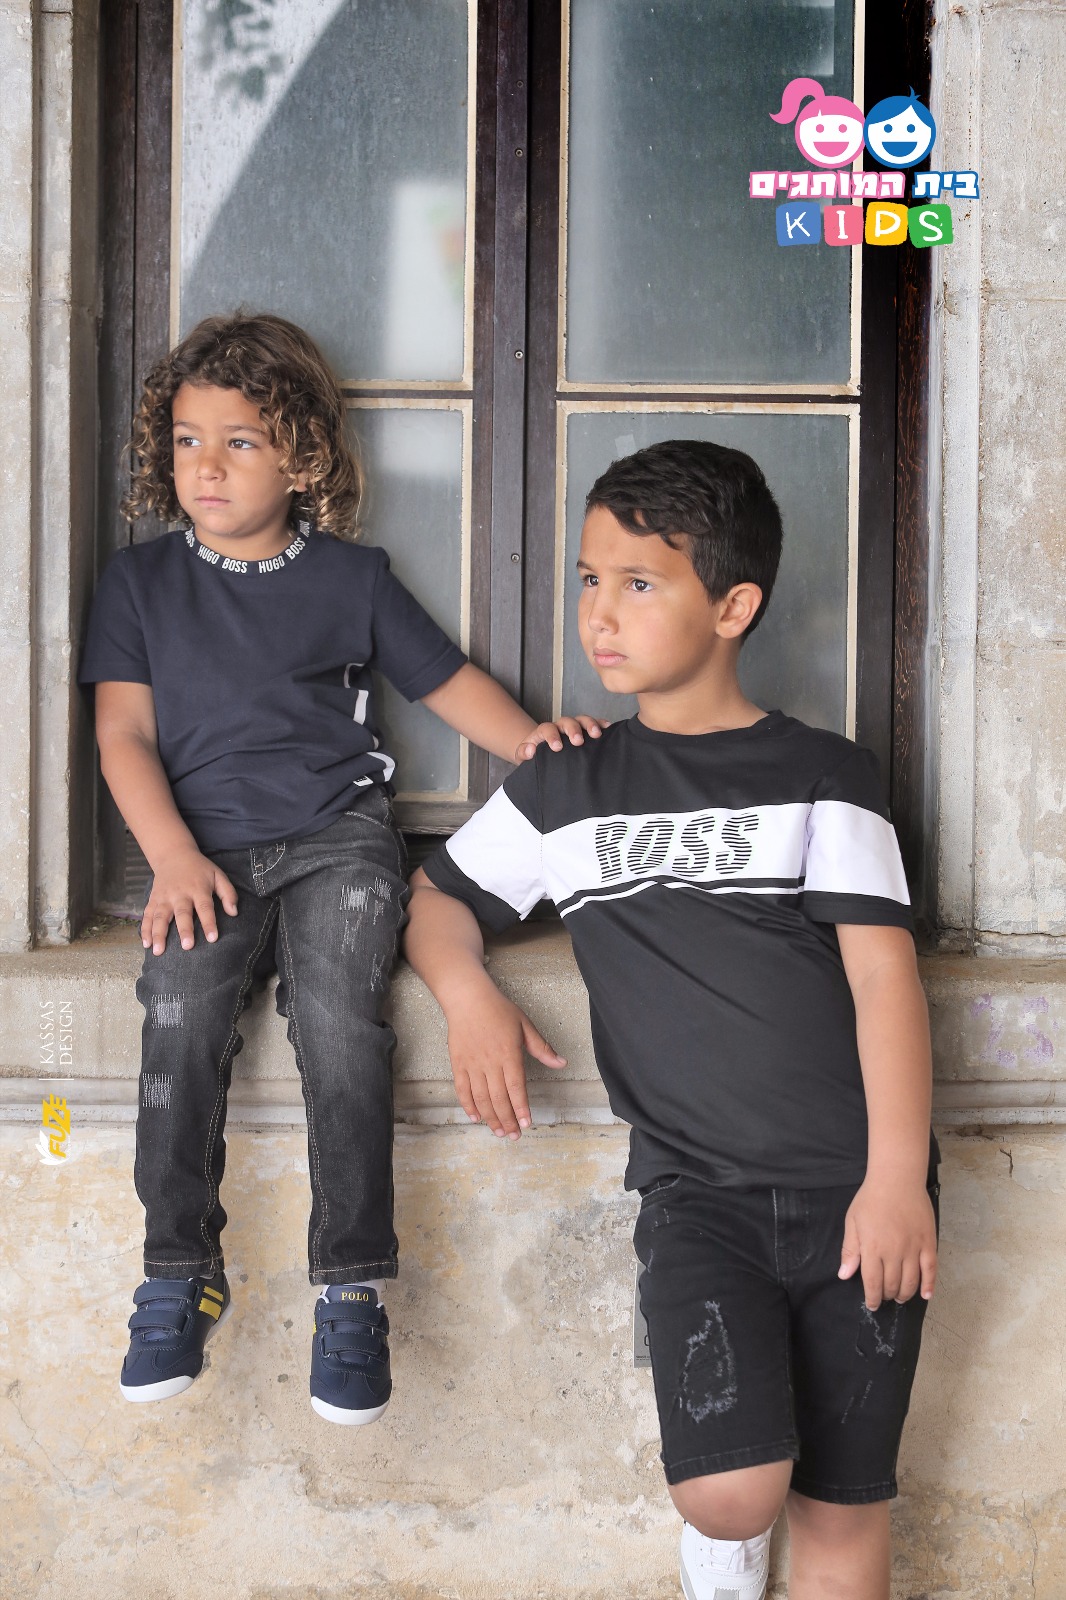  تخفيضات 50% بمناسبة العيد - بوتيك بيت هموتجيم Kids يعلن وصول ملابس العيد